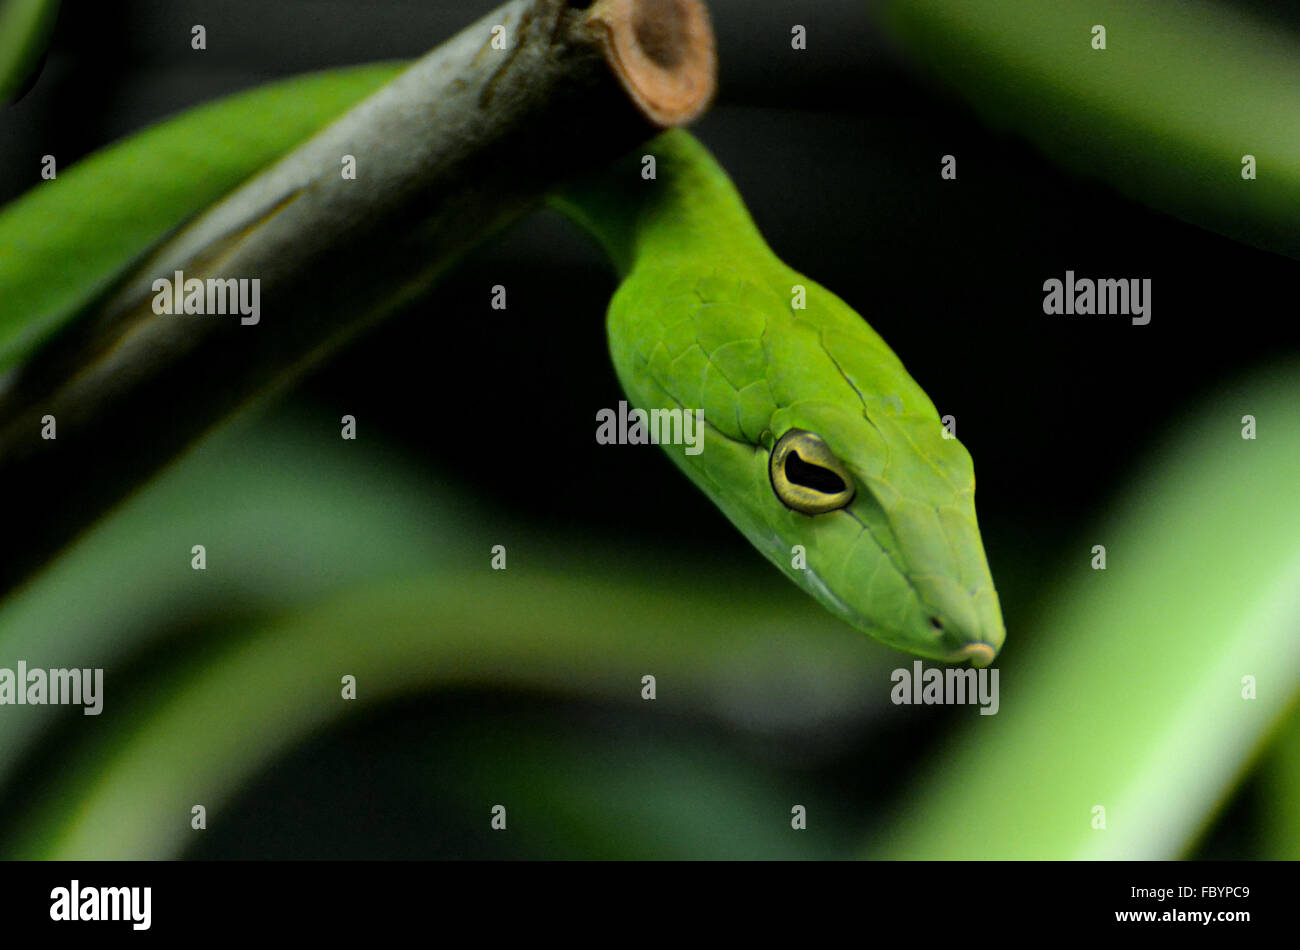 Die grüne Ranke Schlange (Ahaetulla Nasuta), ein Reptil in tropischen Bäumen gefunden. Stockfoto